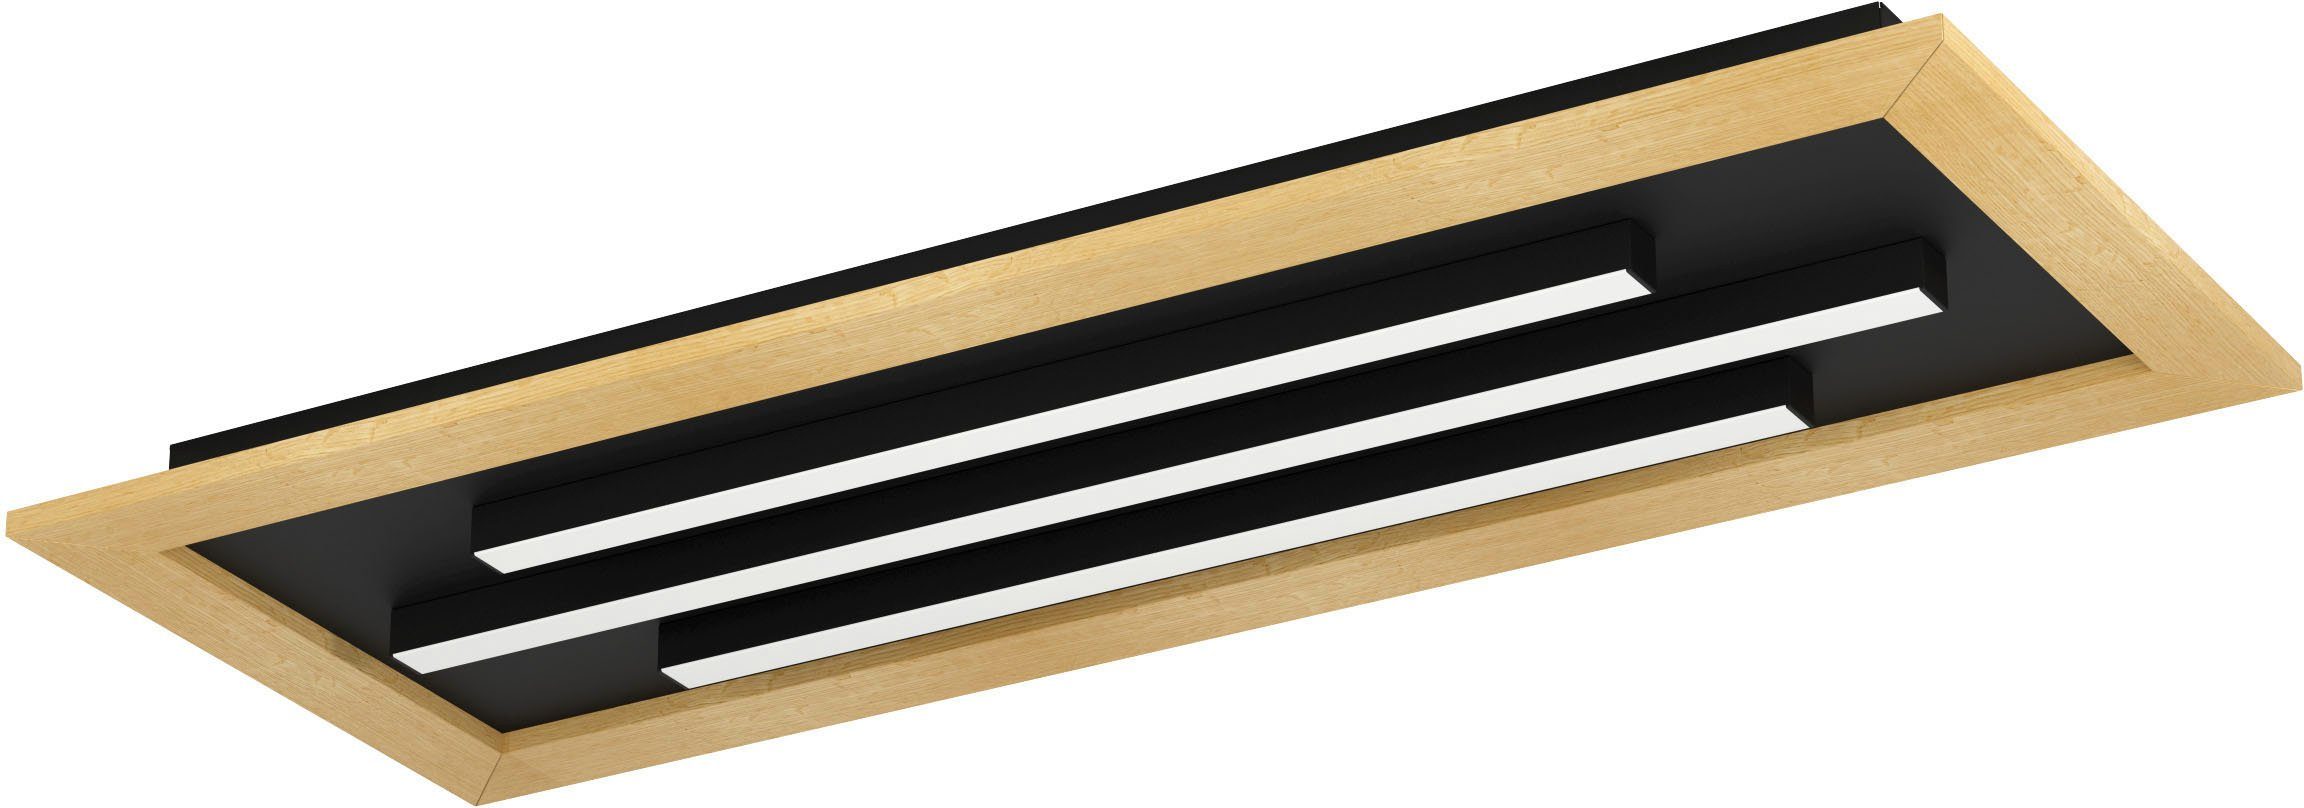 EGLO Deckenleuchte TIRRENARA, LED fest in Stahl, kaltweiß, schwarz aus Deckenleuchte -warmweiß-kaltweiß warmweiß braun - integriert, und Holz